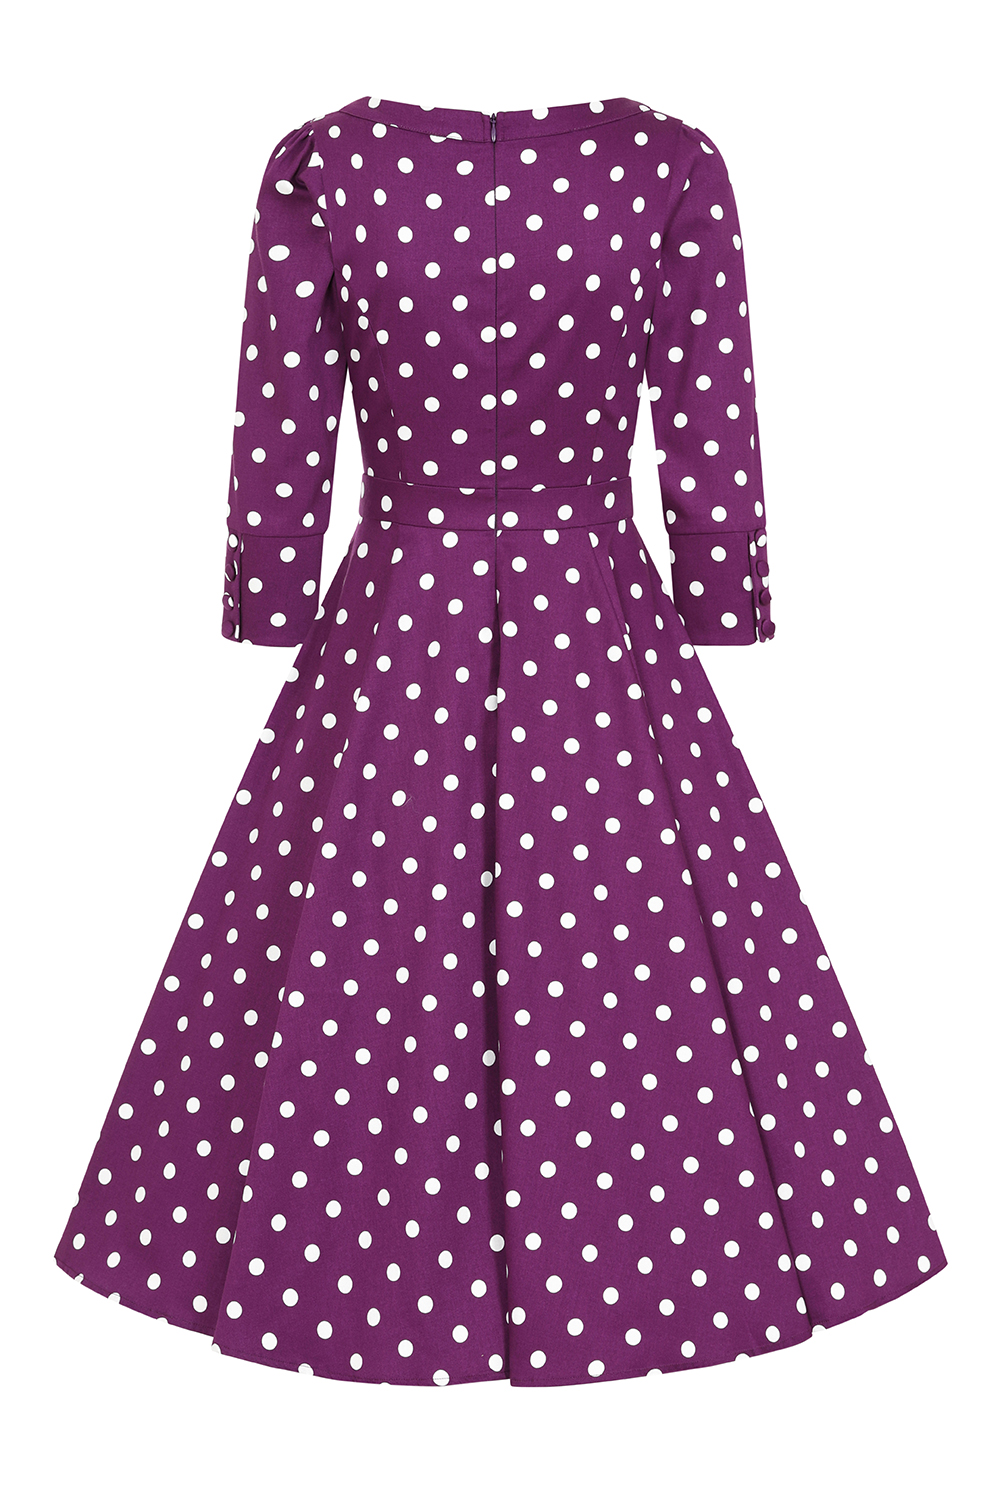 Madalyn Polka Dot Swing Dress in Purple - Hearts & Roses London